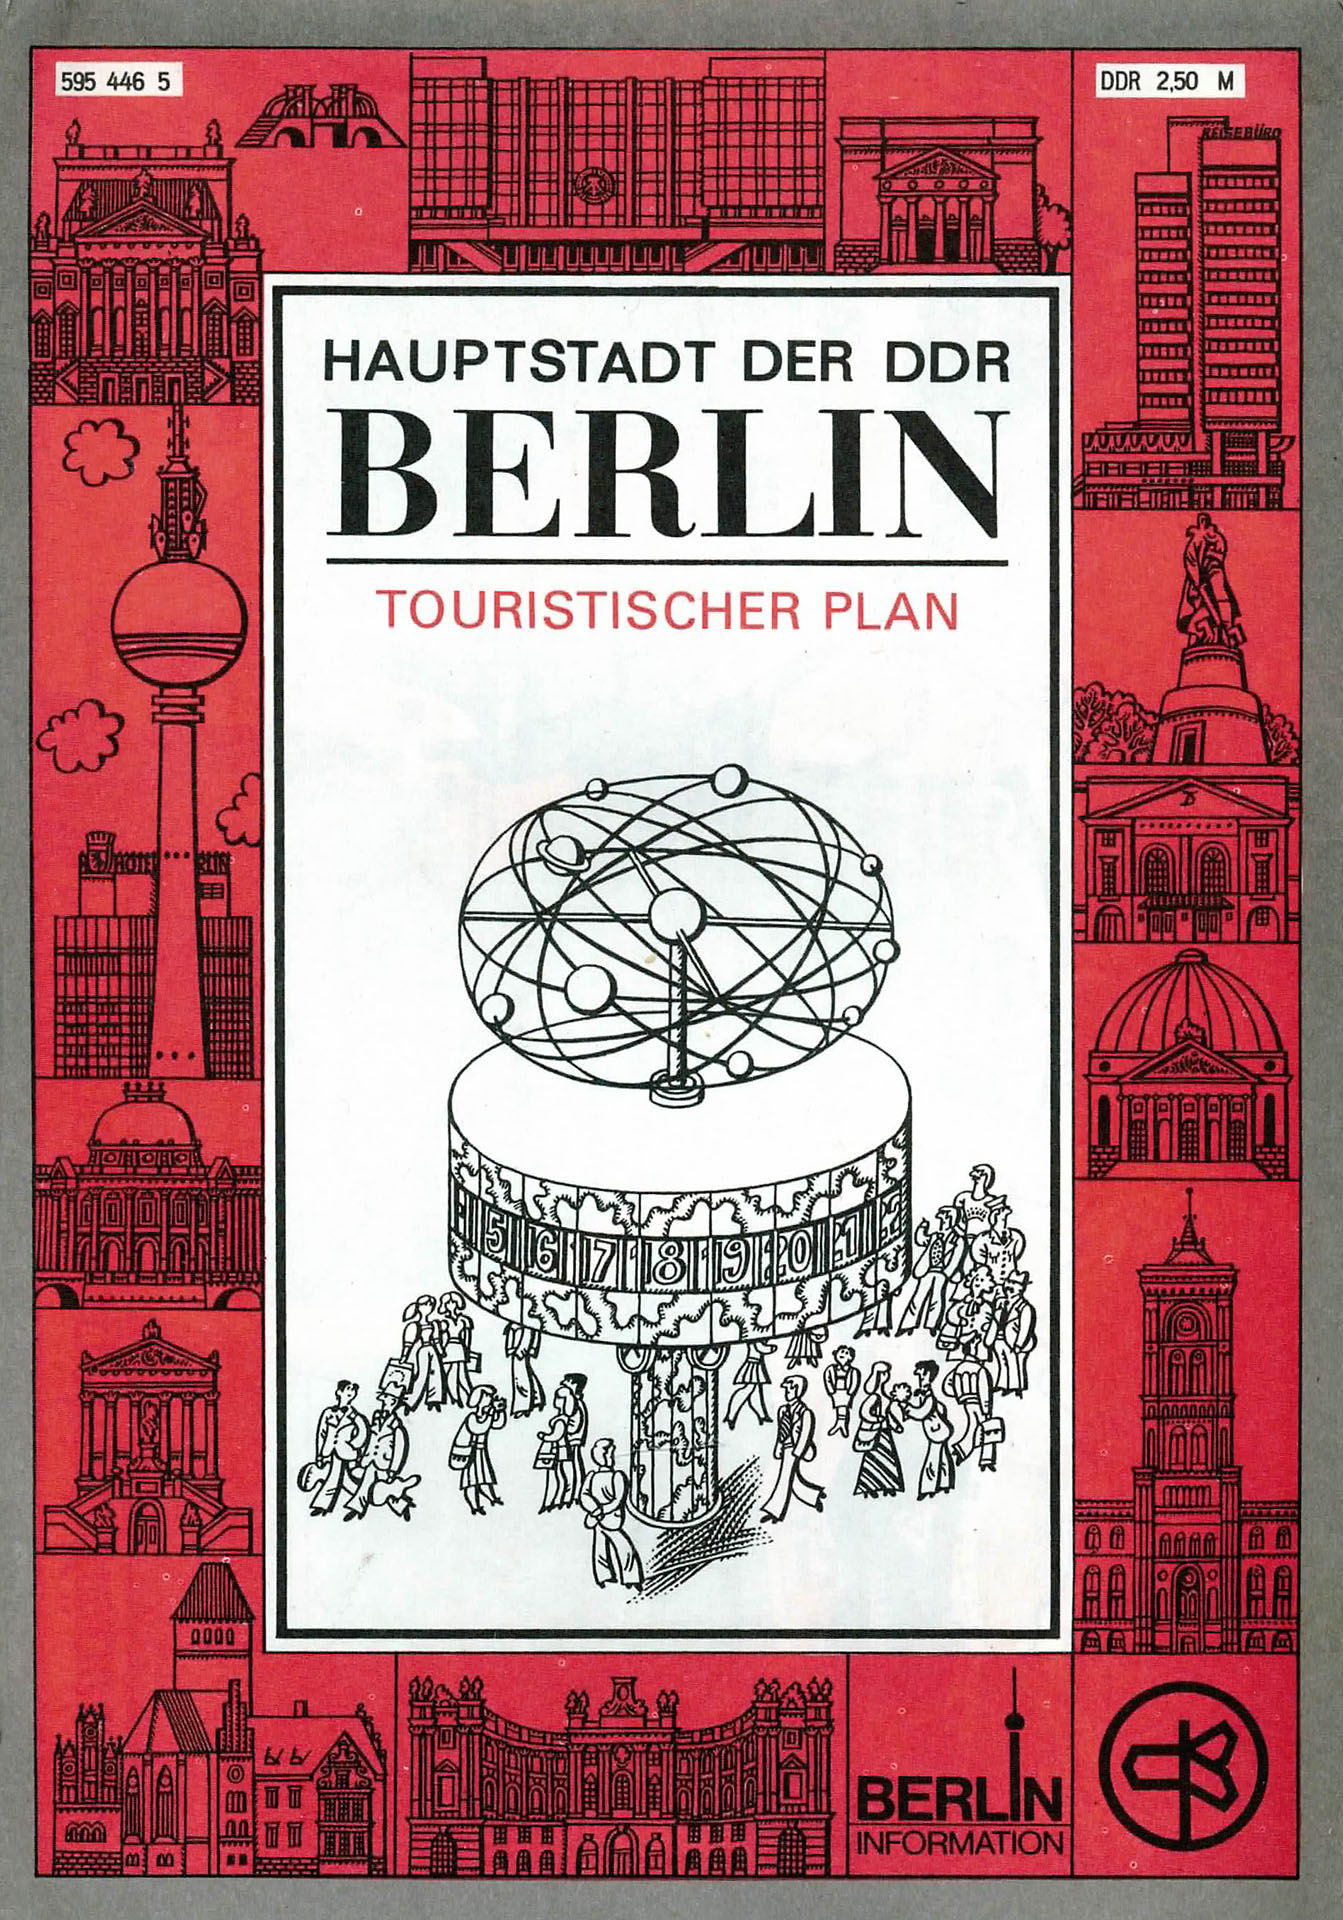 Hauptstadt der DDR - BERLIN - Touristischer Plan